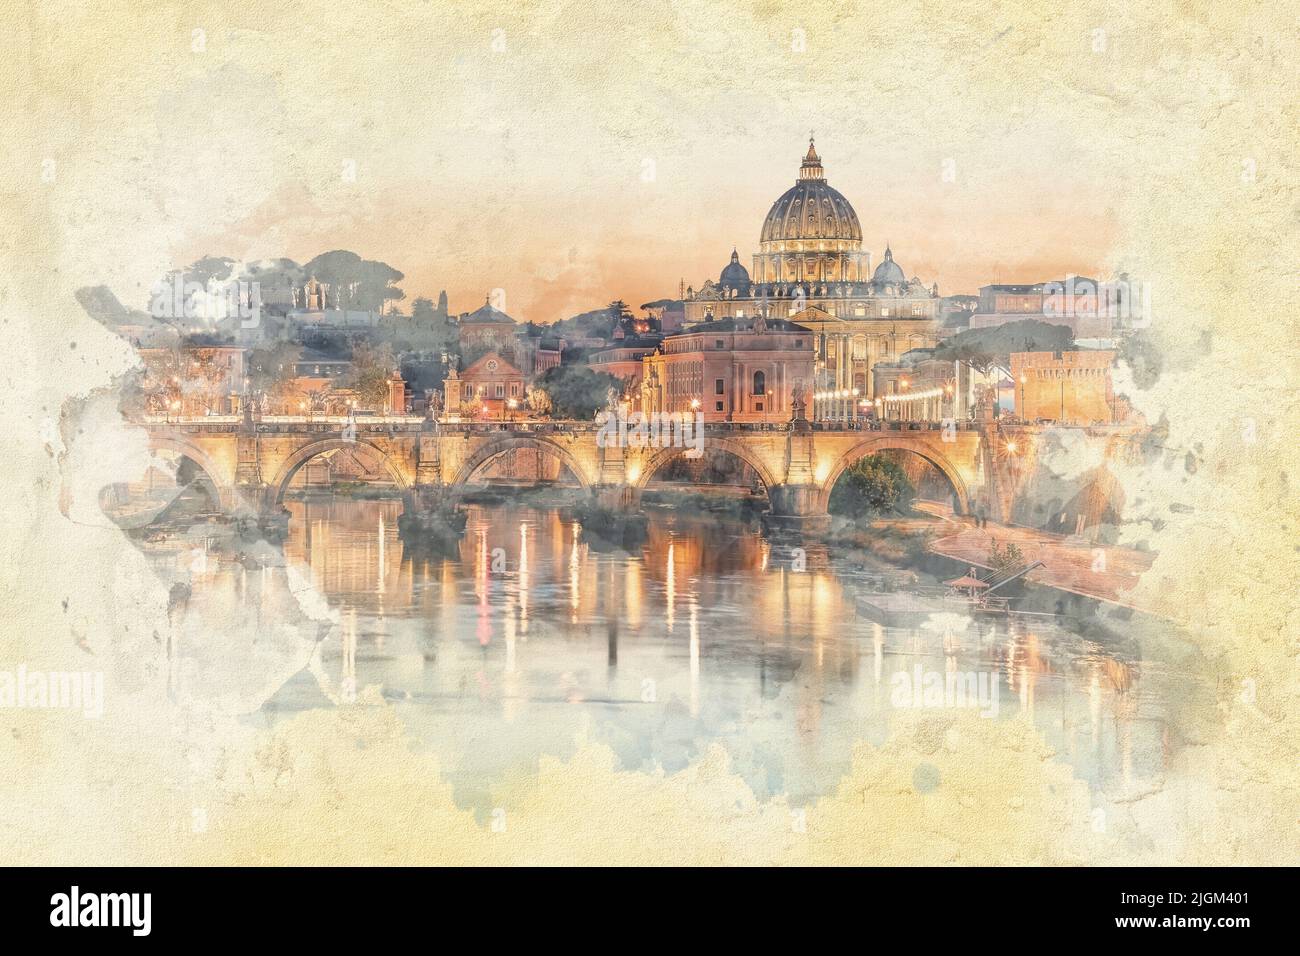 La ville de Rome au coucher du soleil - illustration de l'effet aquarelle Banque D'Images